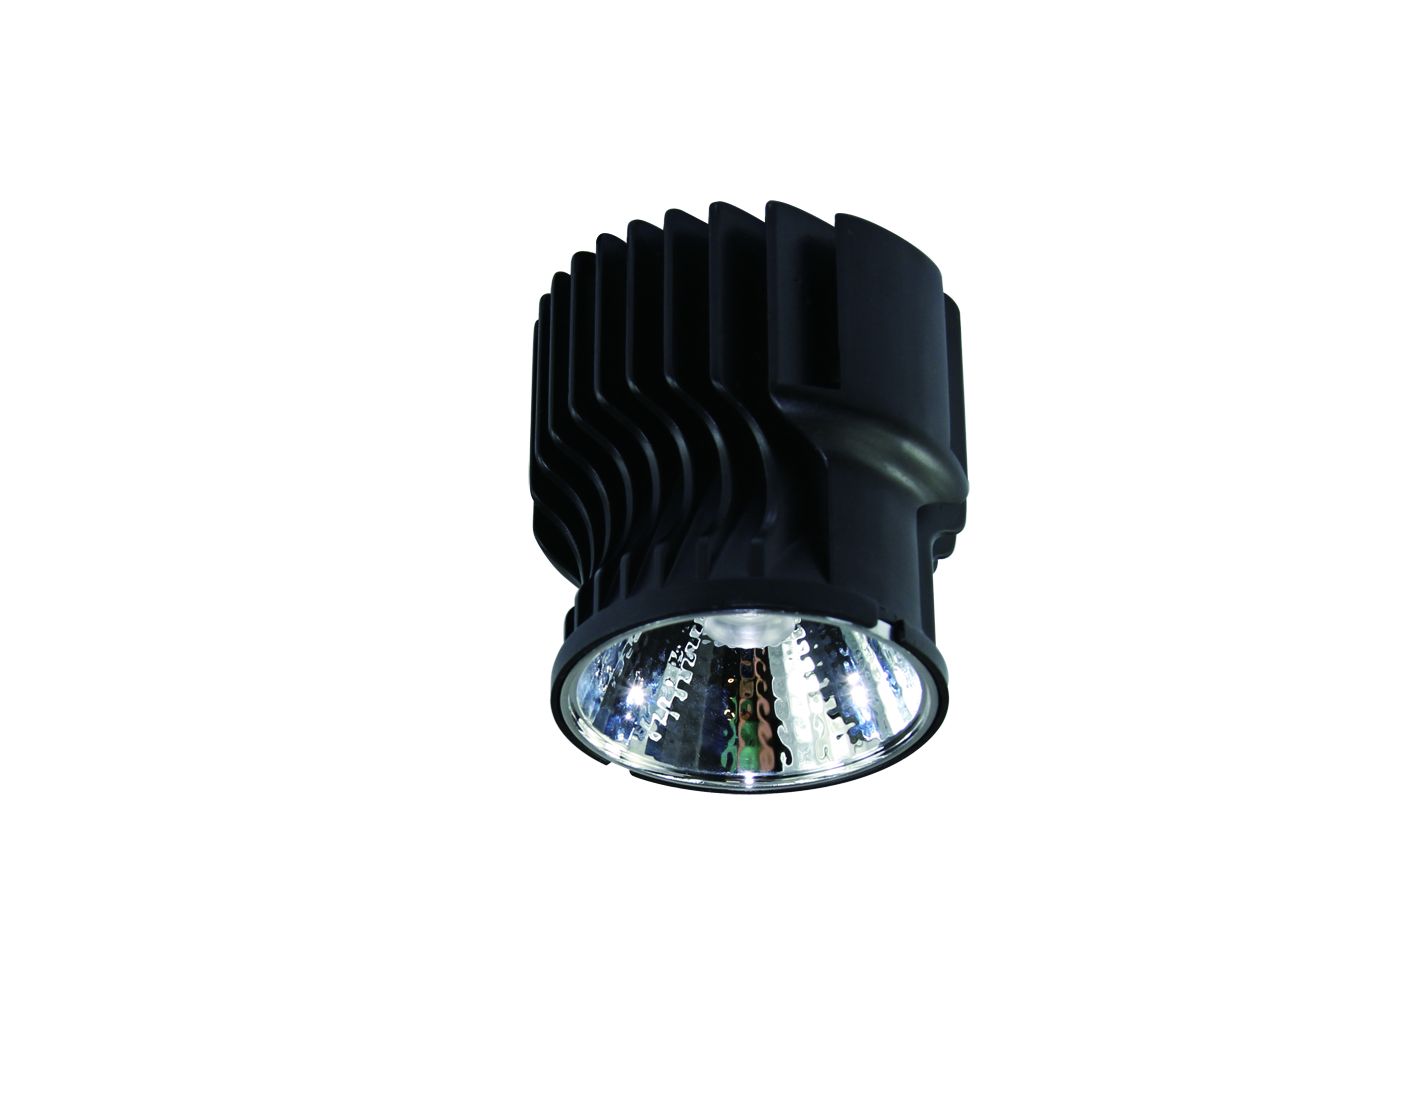 30W Bridgelux LED-Modul für Straßenbeleuchtung